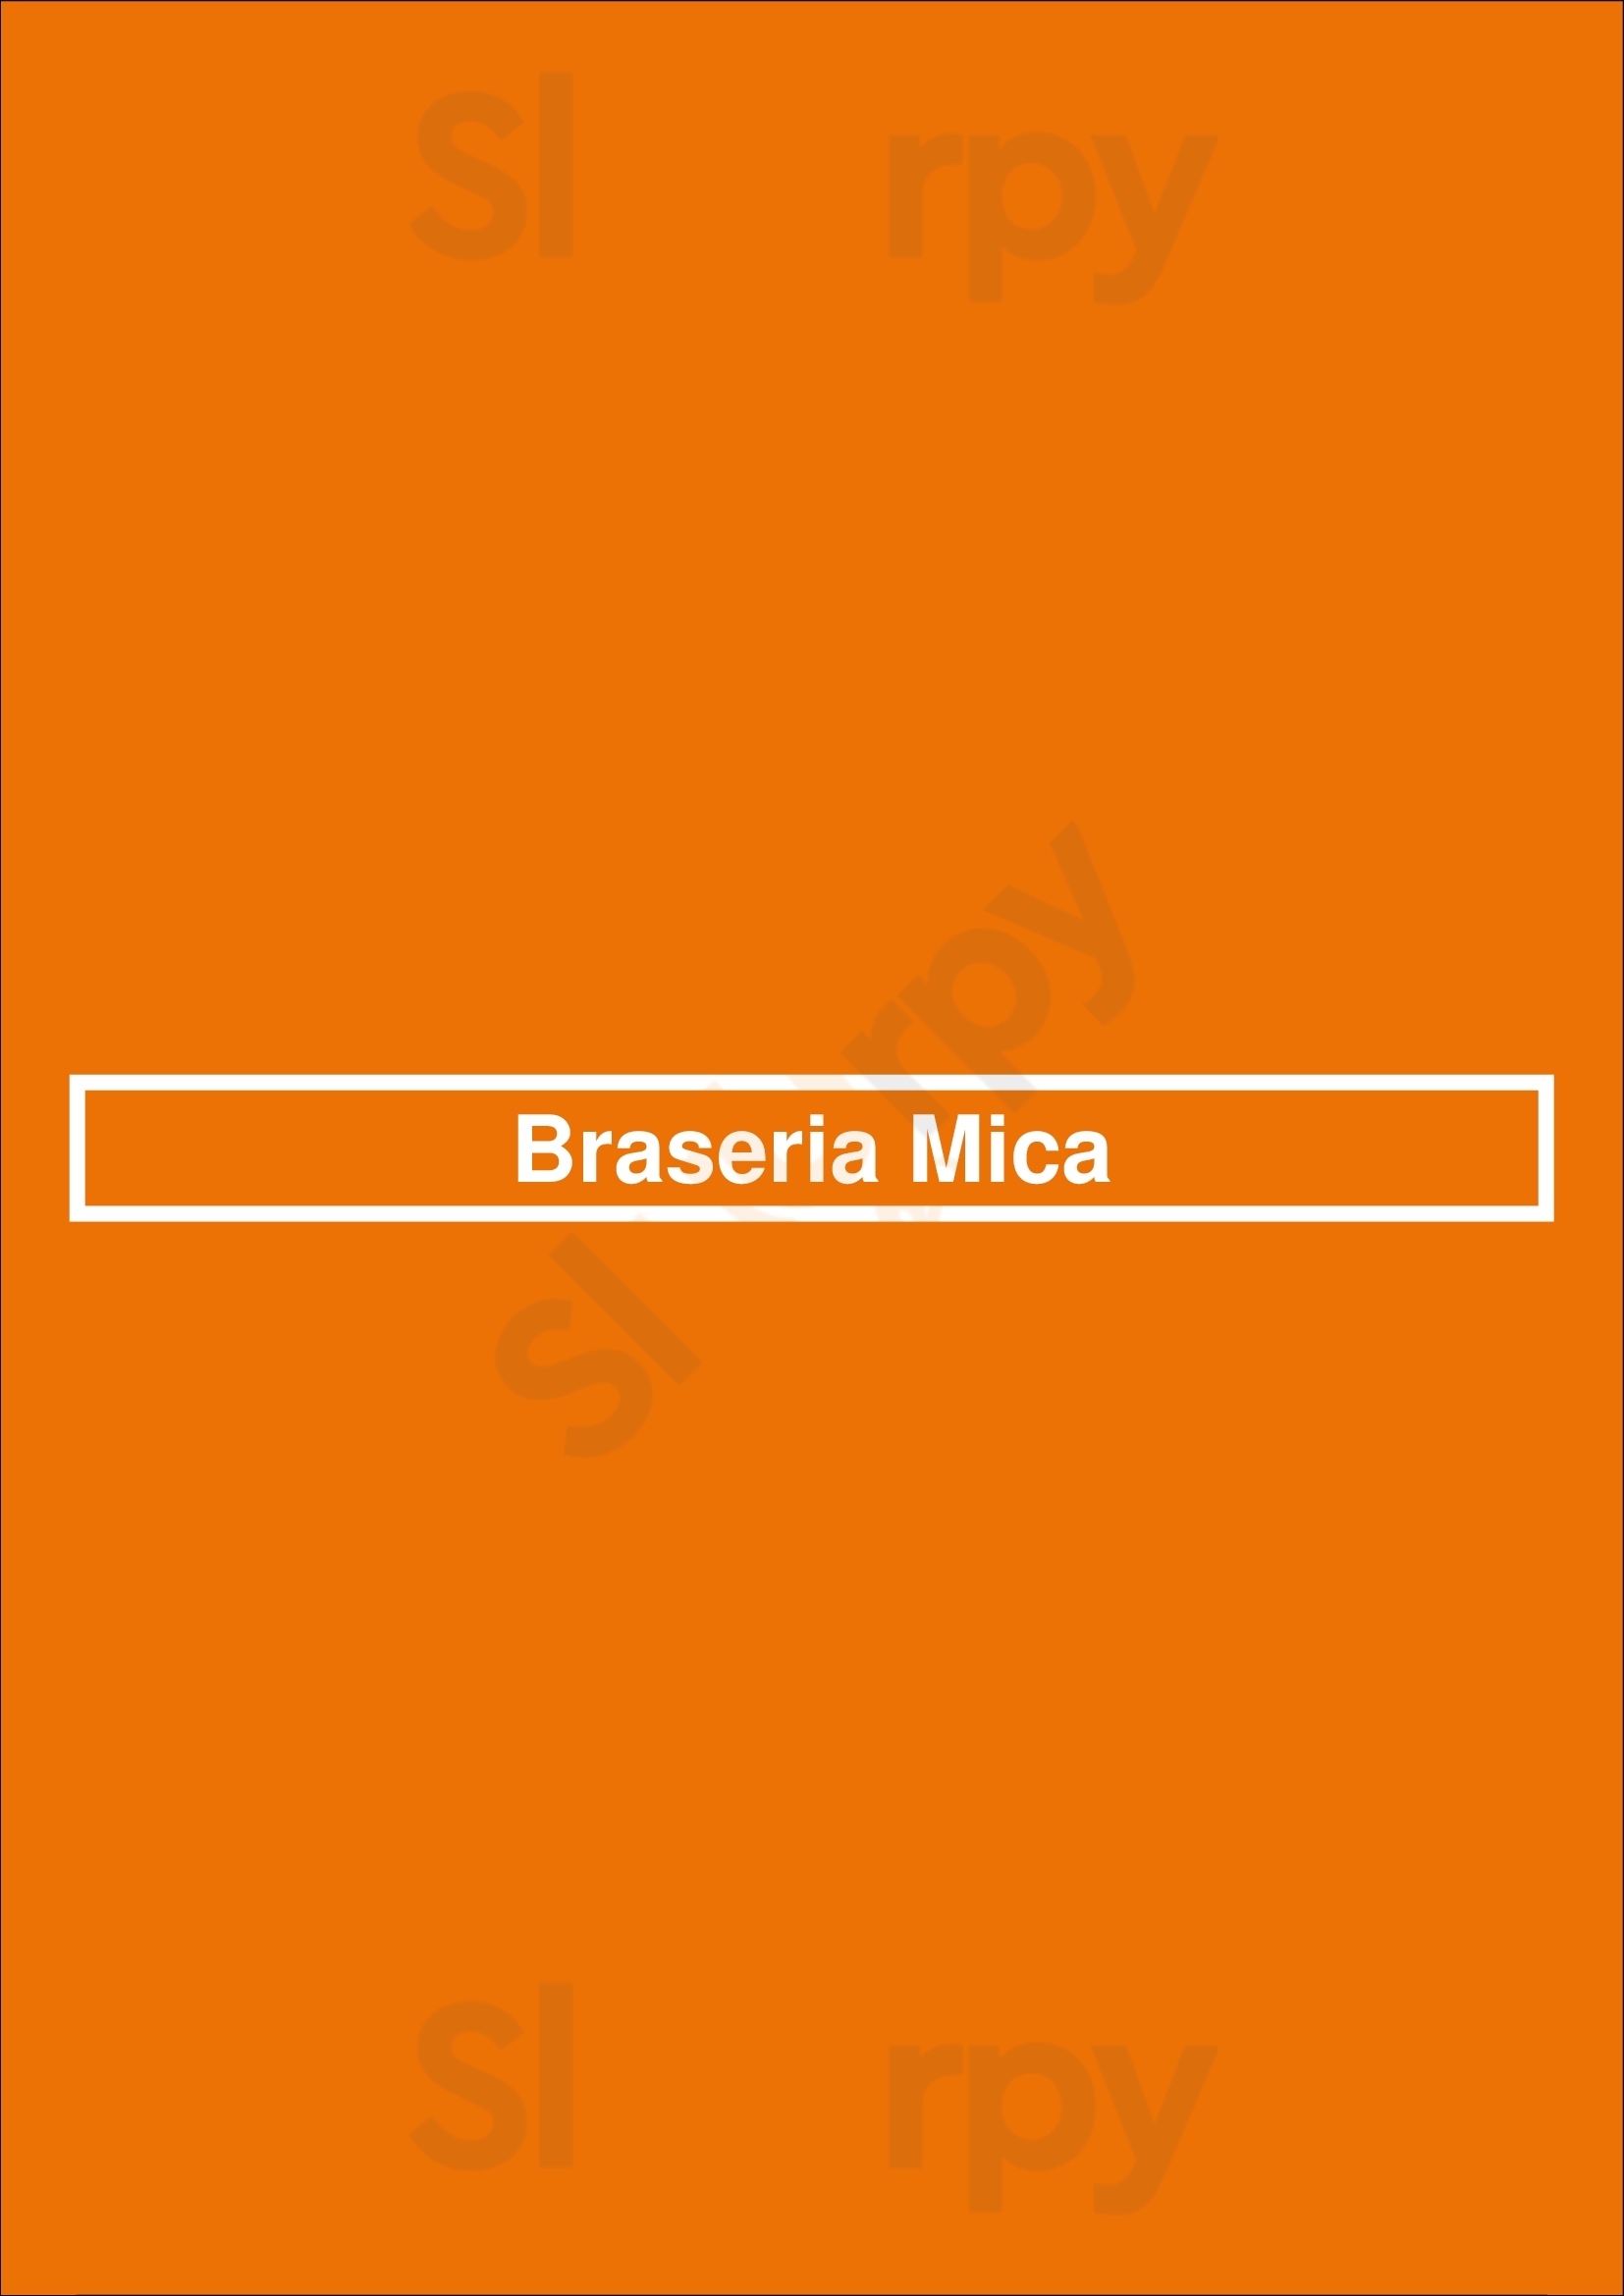 Braseria Mica Zaragoza Menu - 1